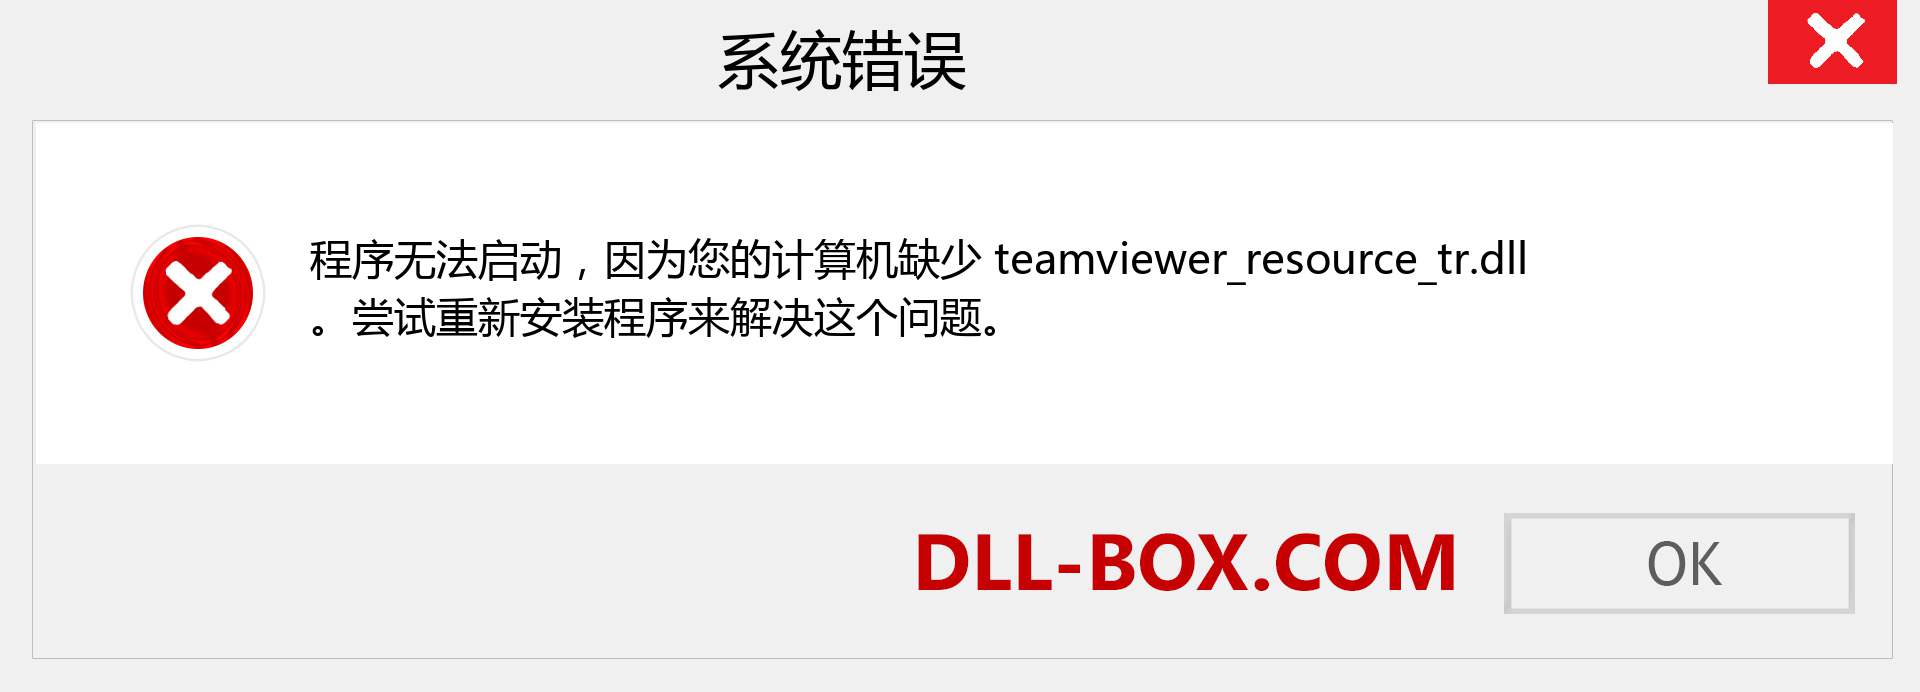 teamviewer_resource_tr.dll 文件丢失？。 适用于 Windows 7、8、10 的下载 - 修复 Windows、照片、图像上的 teamviewer_resource_tr dll 丢失错误